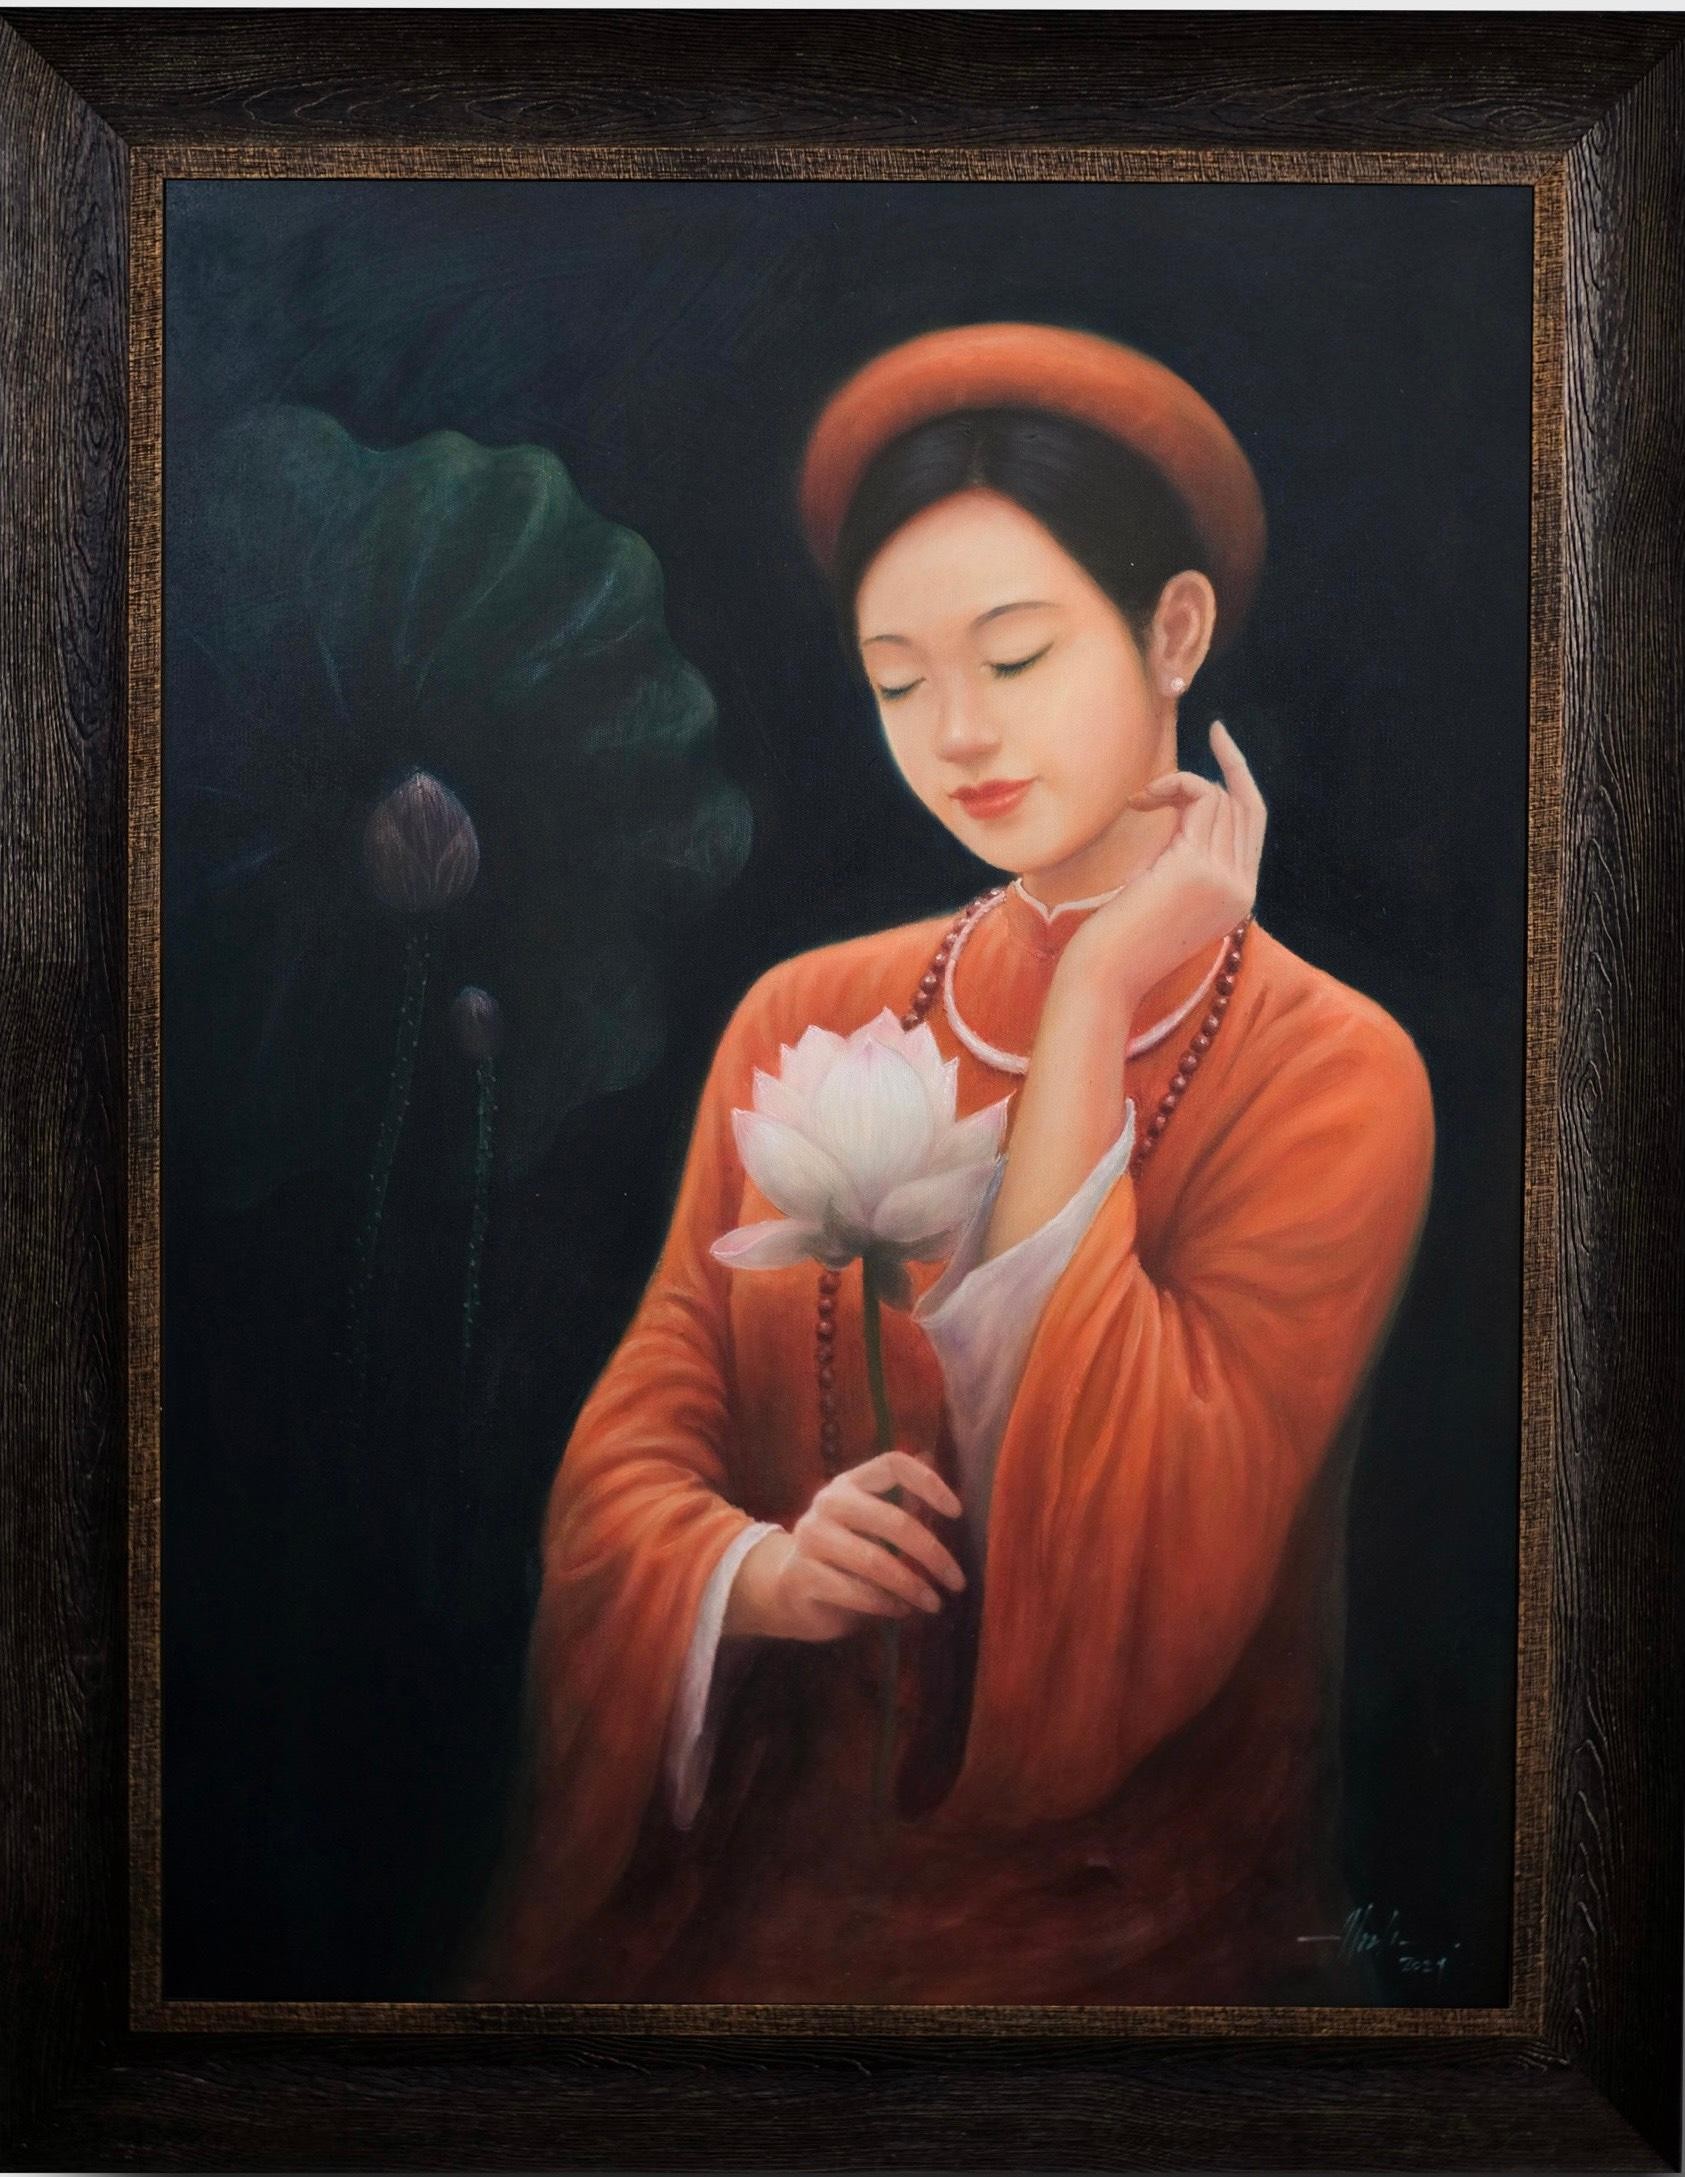 Làng nghề Việt Nam chính là một thế giới đầy sắc màu và sức sống. Hãy xem những bức ảnh về truyền thống nghề làm gốm, thủ công mỹ nghệ qua ống kính của nhiếp ảnh gia. Bạn sẽ điềm đạm hơn khi ngắm nhìn bức tranh về tâm hồn của những người làm nghề ấy.